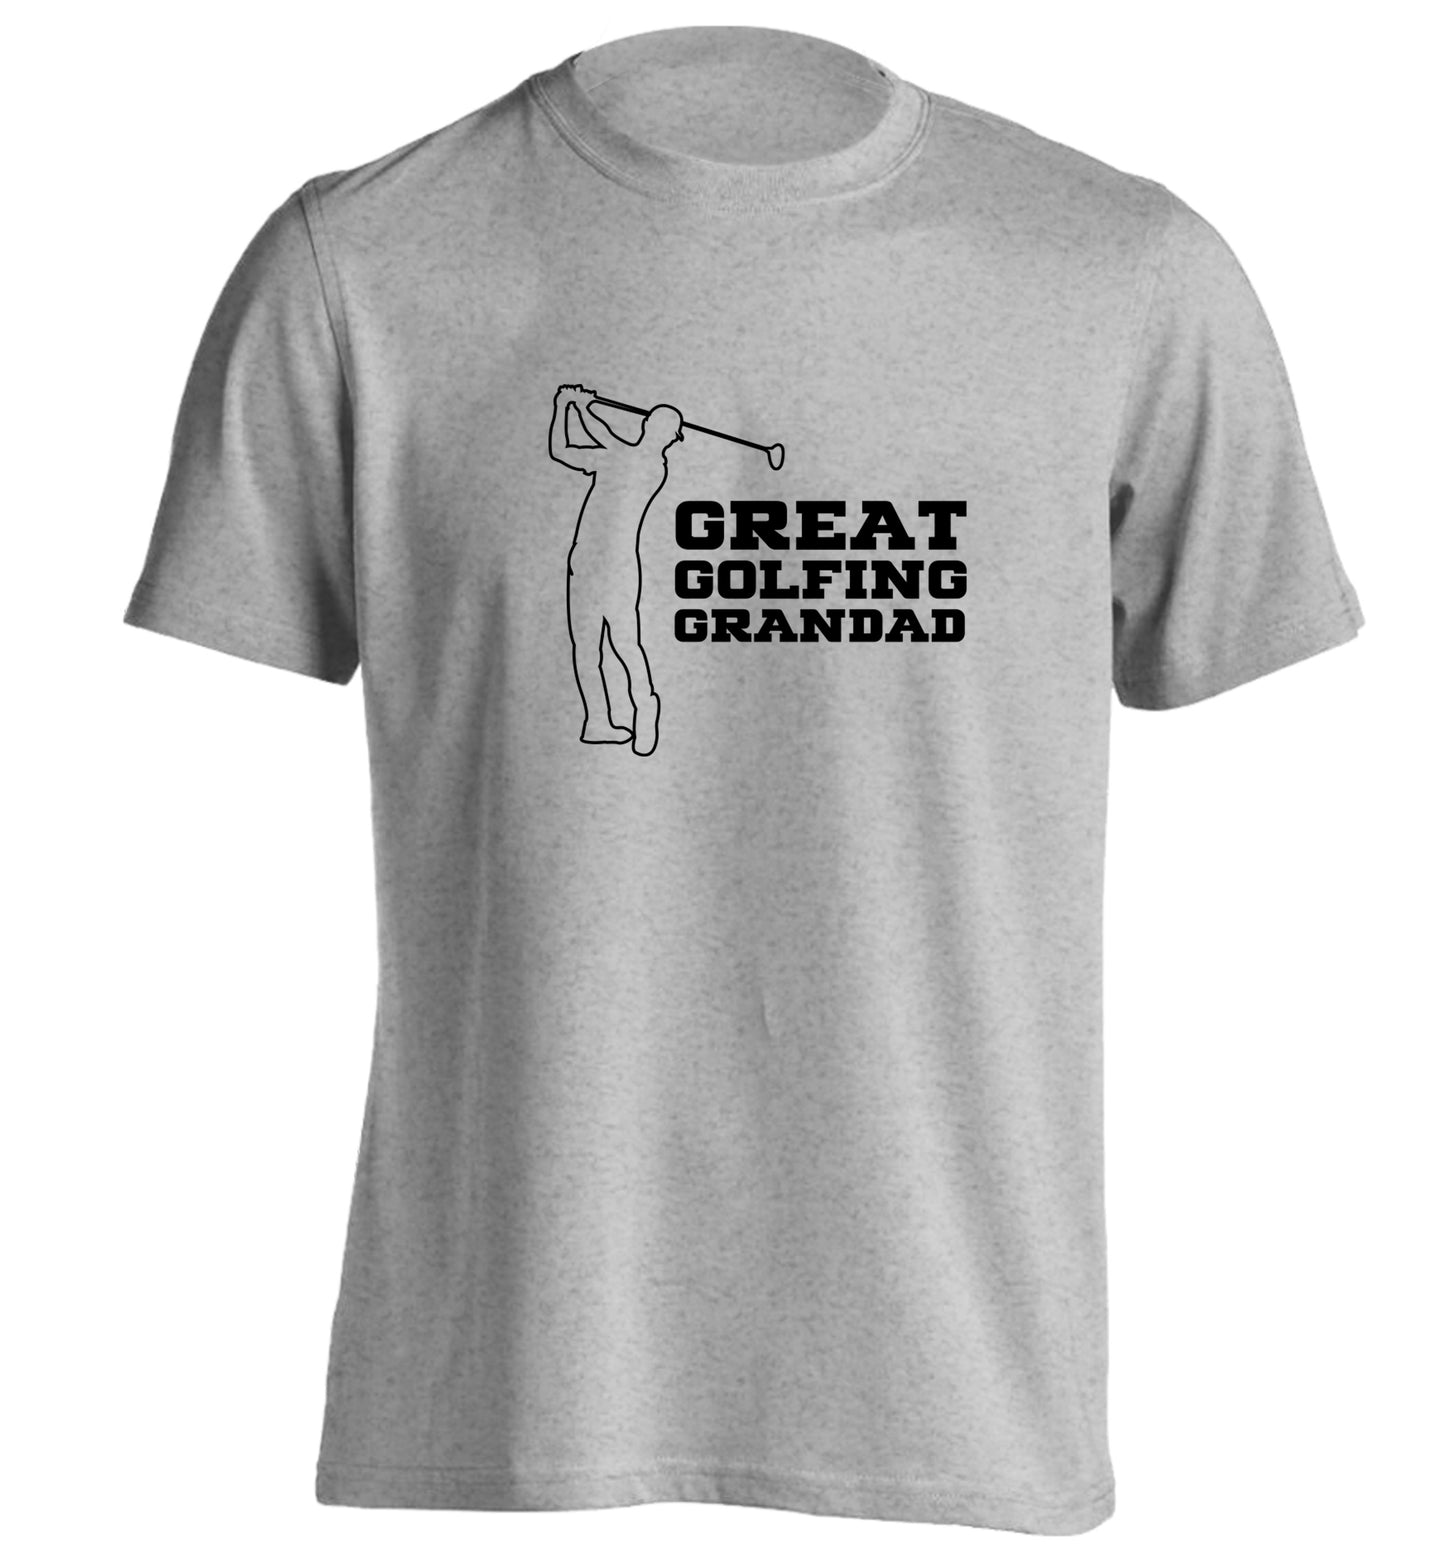 Great Golfing Grandad adults unisex grey Tshirt 2XL